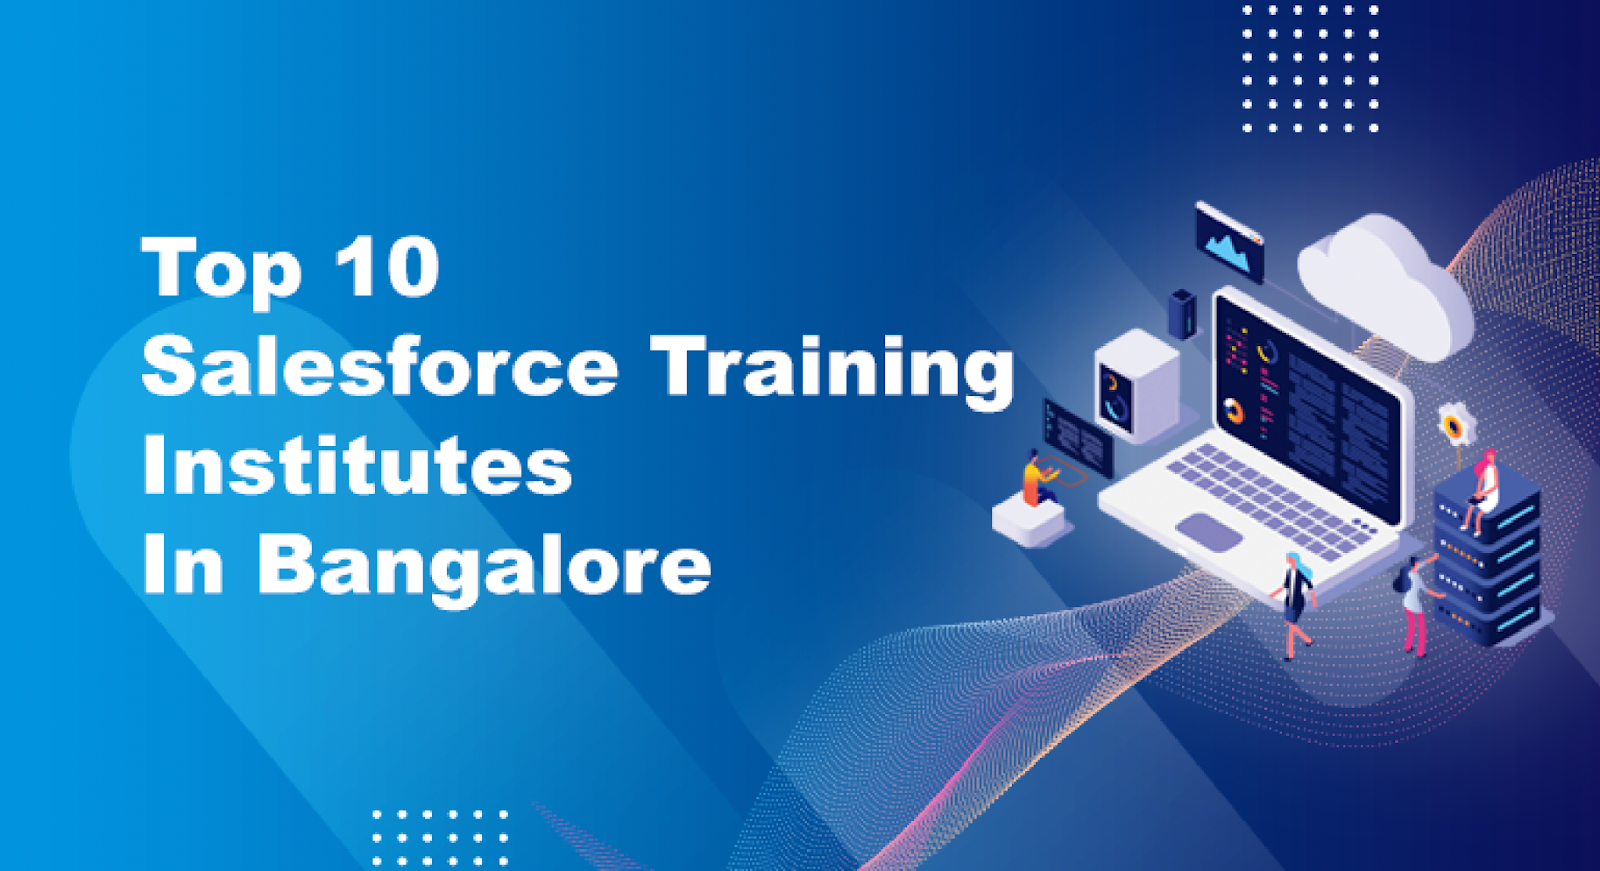 Salesforce Training Institutes In Bangalore